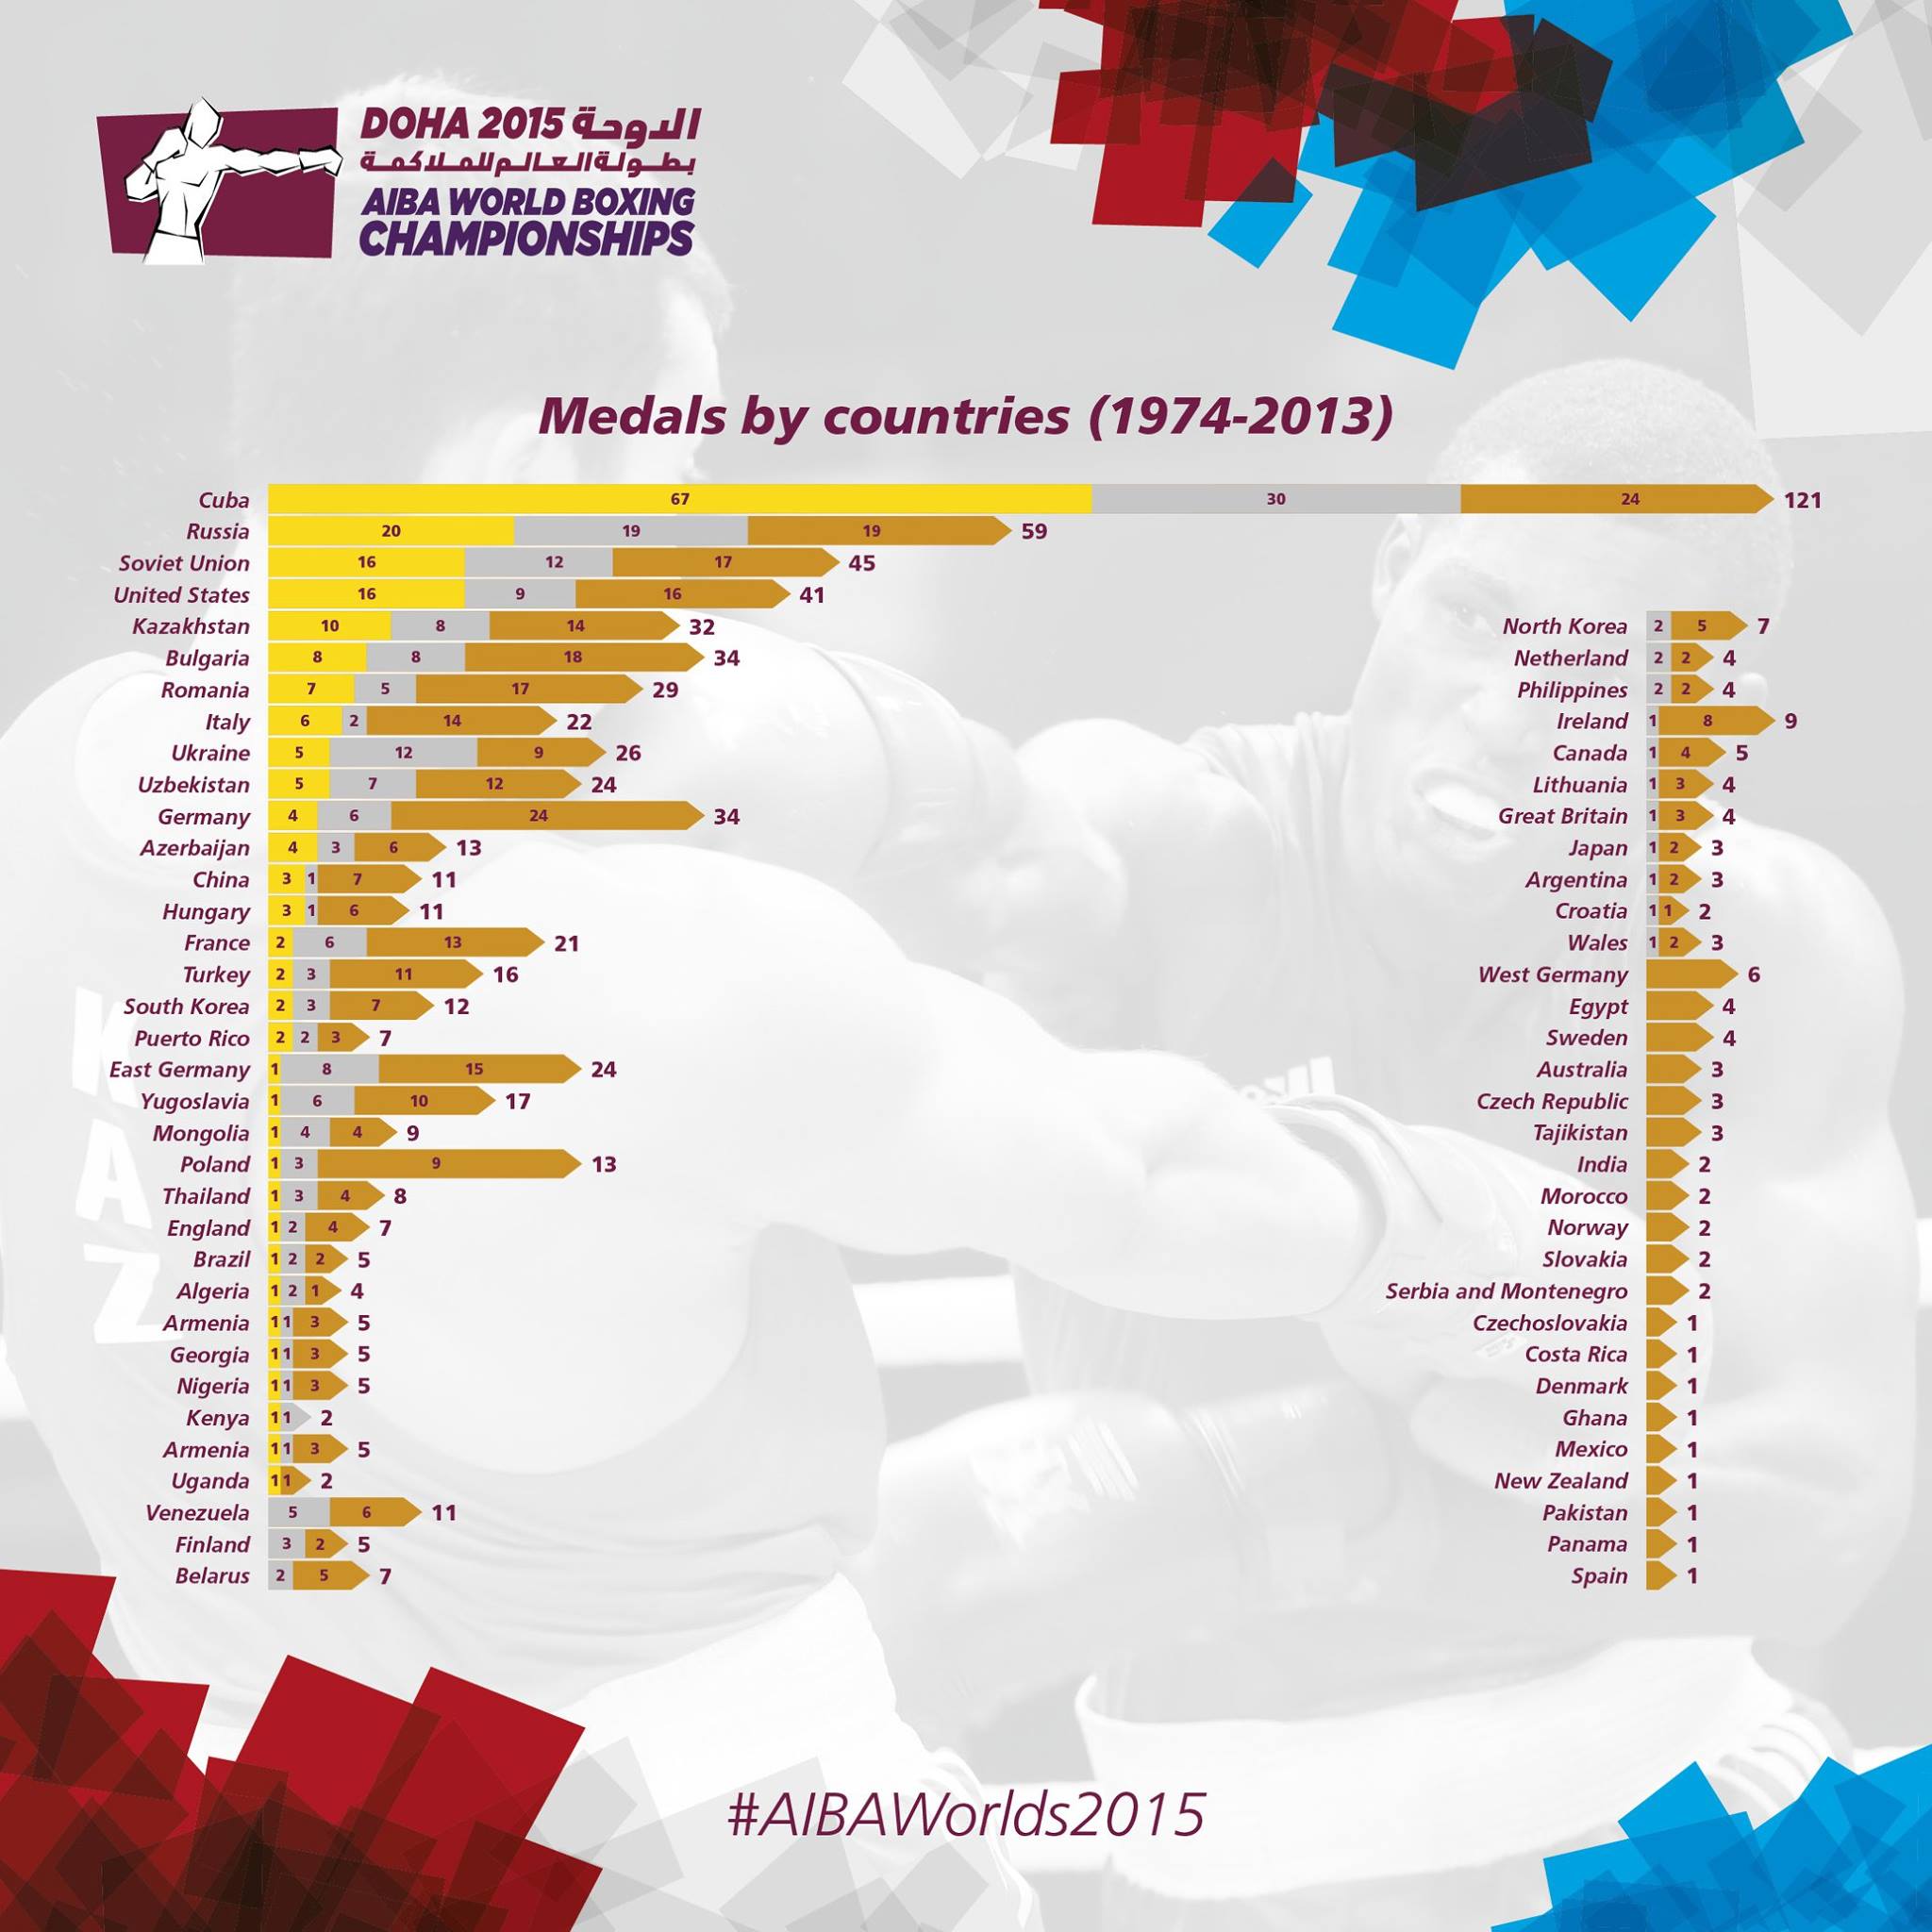 7 Giorni al via degli #AIBAWorlds2015 Mondiali di #DOHA2015, sarà la 18° edizione Italia al momento 8° nel medagliere di sempre 